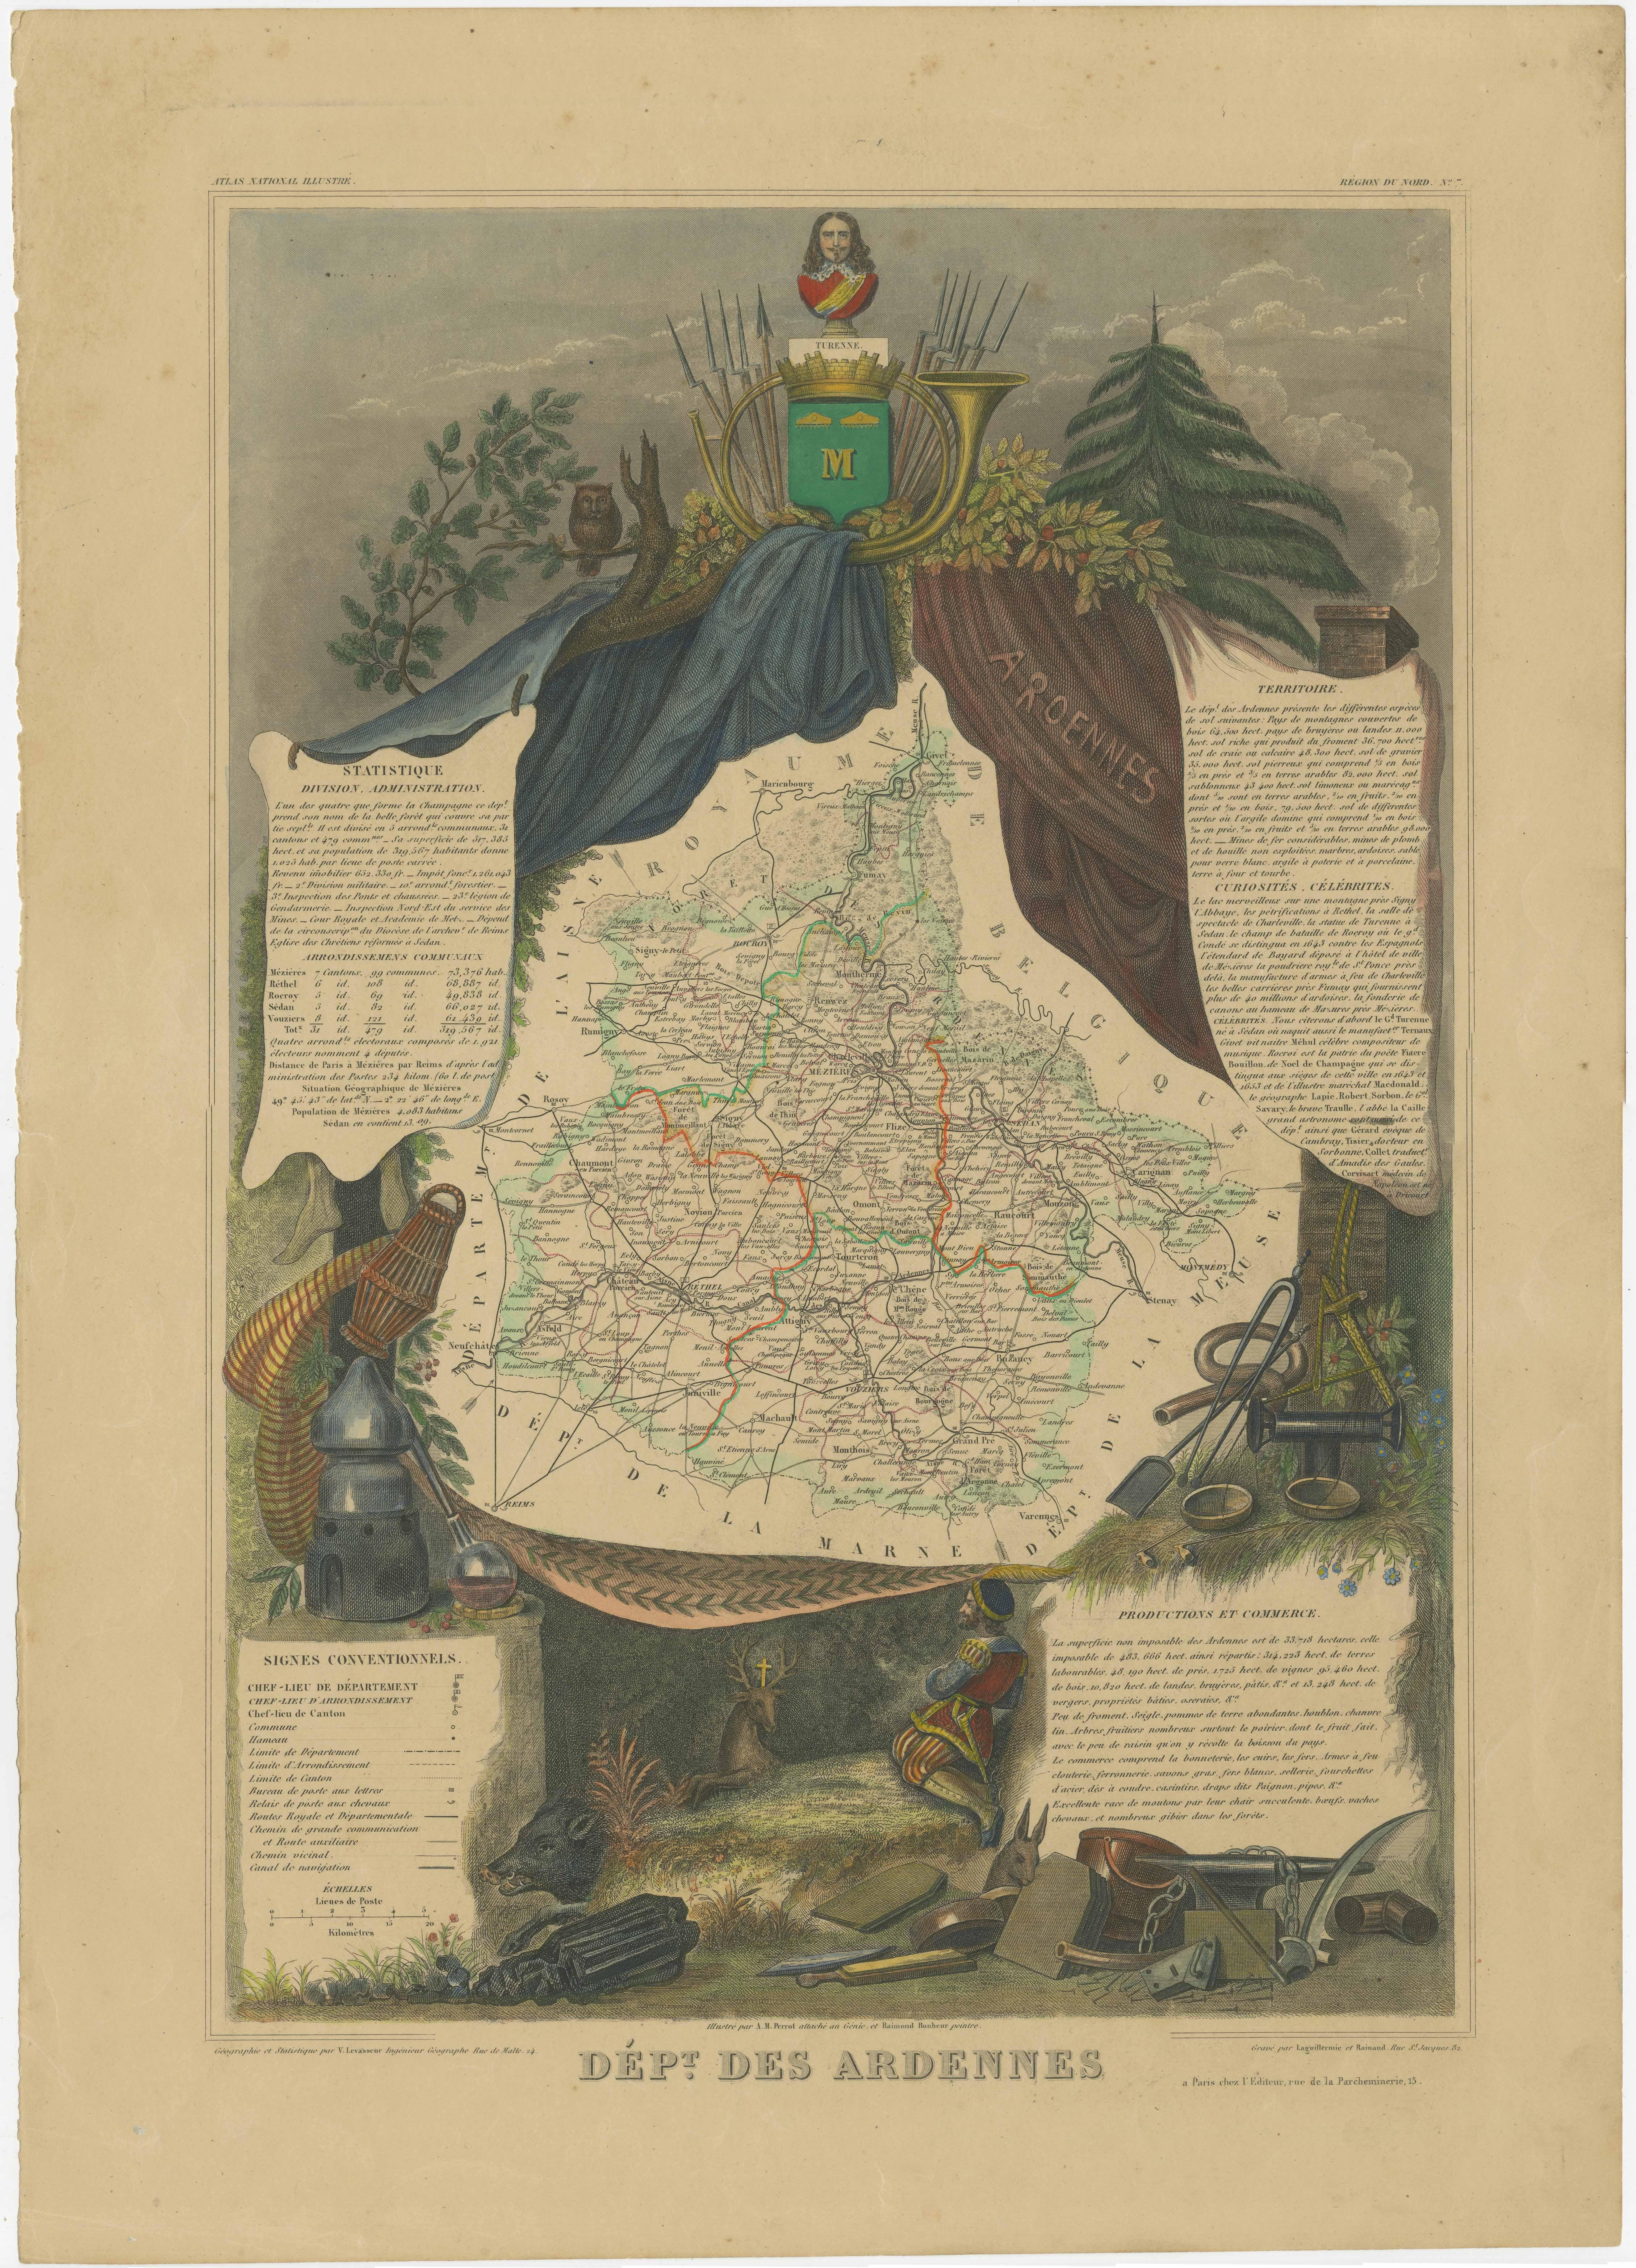 Antike Karte mit dem Titel 'Dépt. des Ardennes'. Karte des französischen Departements Ardennen, Frankreich. Teil der bedeutenden französischen Champagne-Region. Das Ganze ist von aufwendigen dekorativen Gravuren umgeben, die sowohl die natürliche